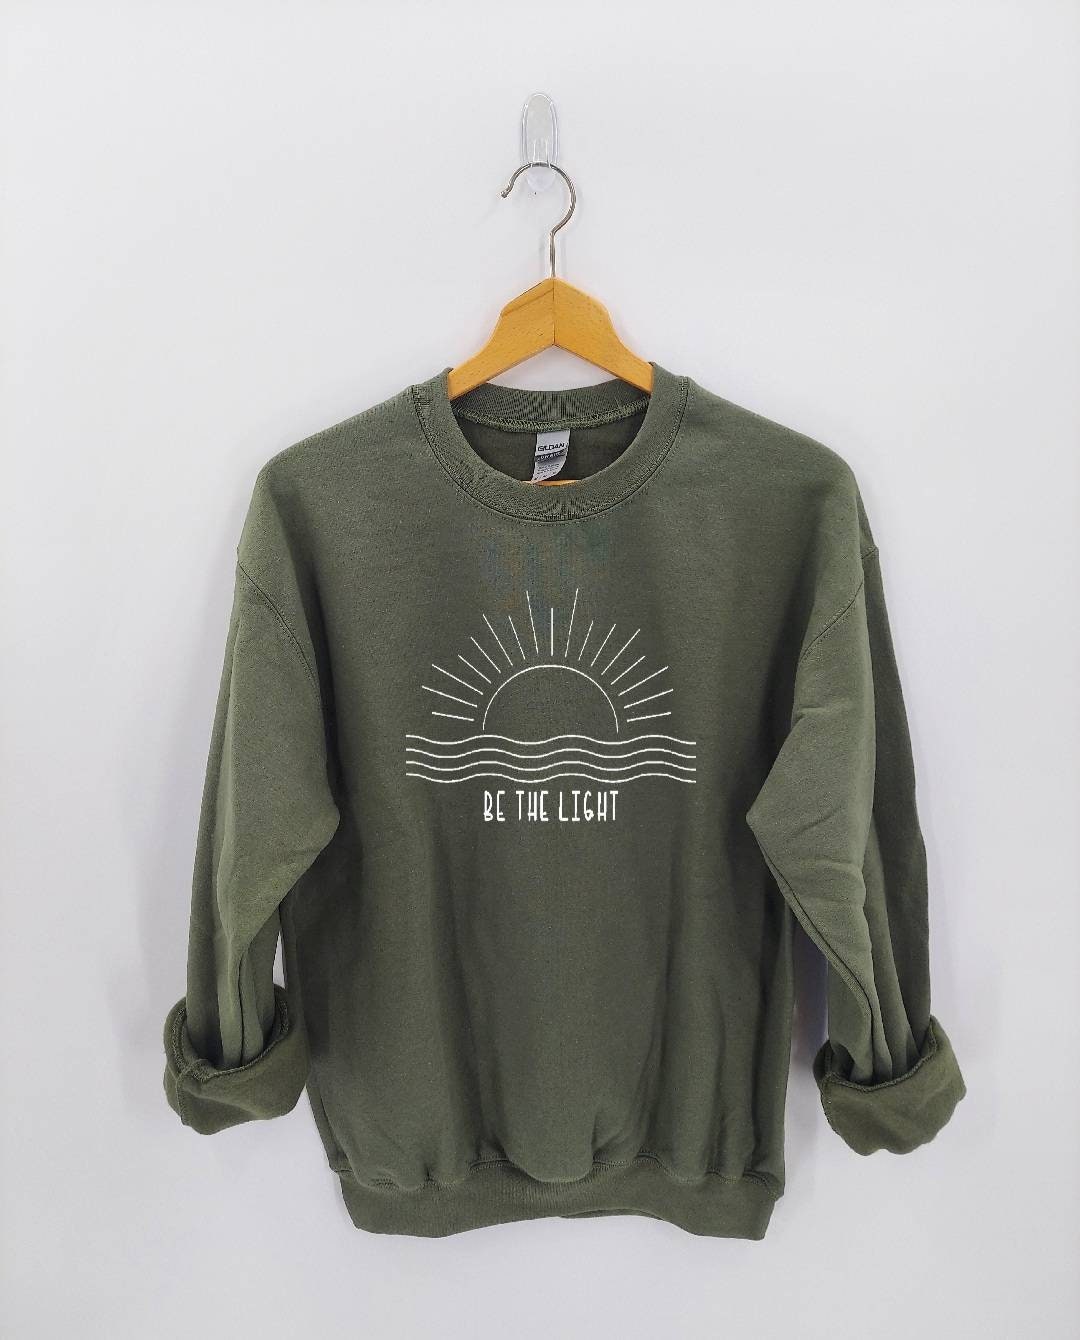 Be The Light Sweater - Sunset Shirt Sunrise Süßes Sweatshirt Für Frauen Sommer von AliceJoyCreations